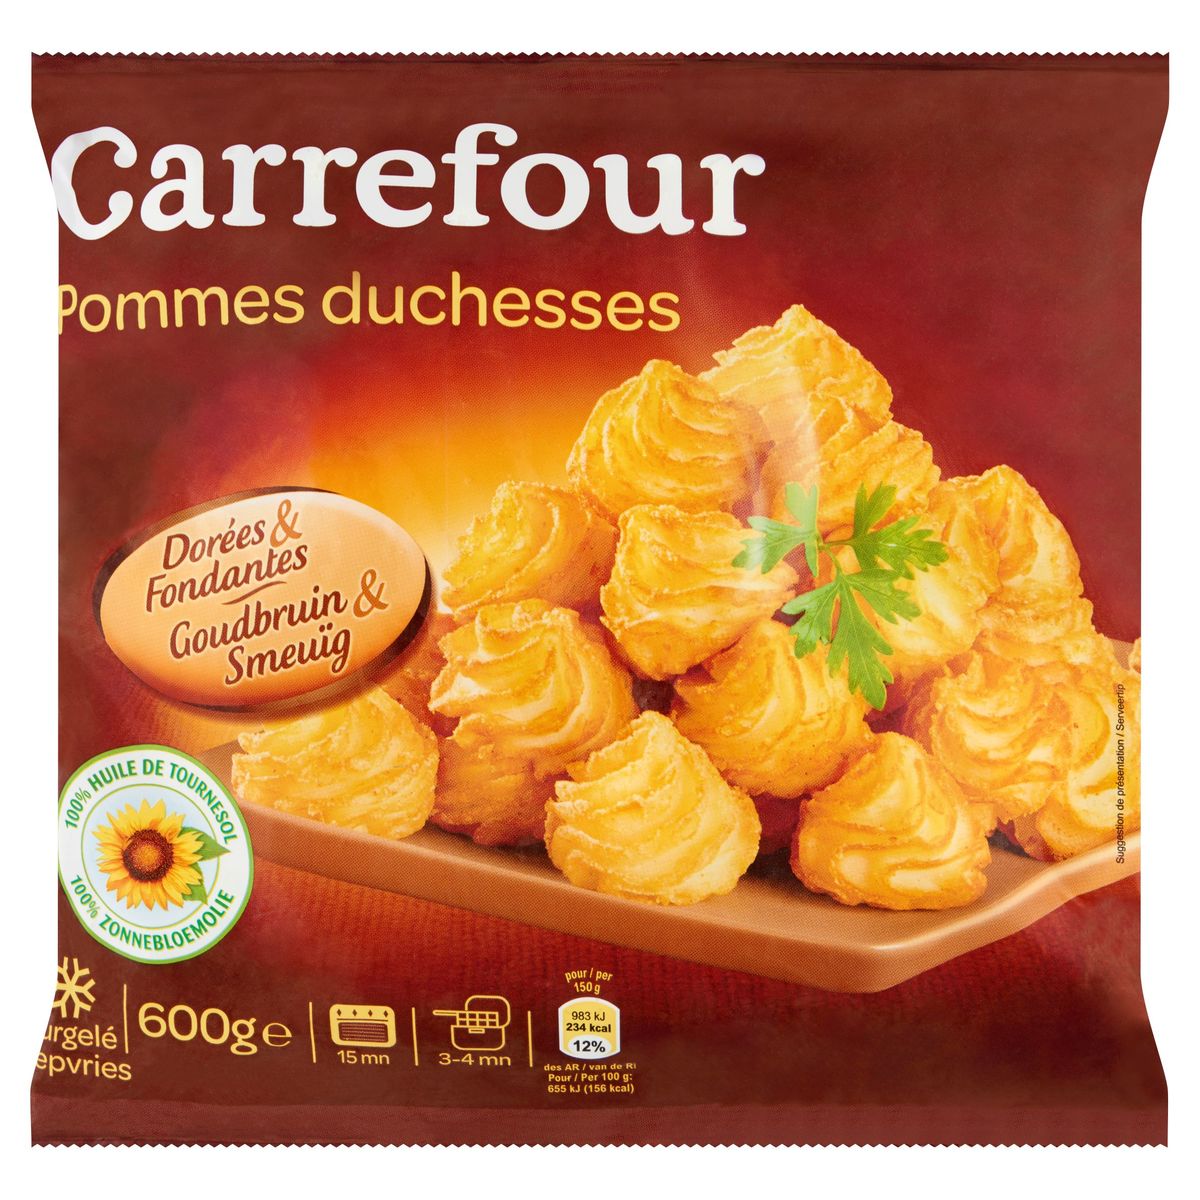 Carrefour Pommes Duchesses Dorées & Fondantes 600 g